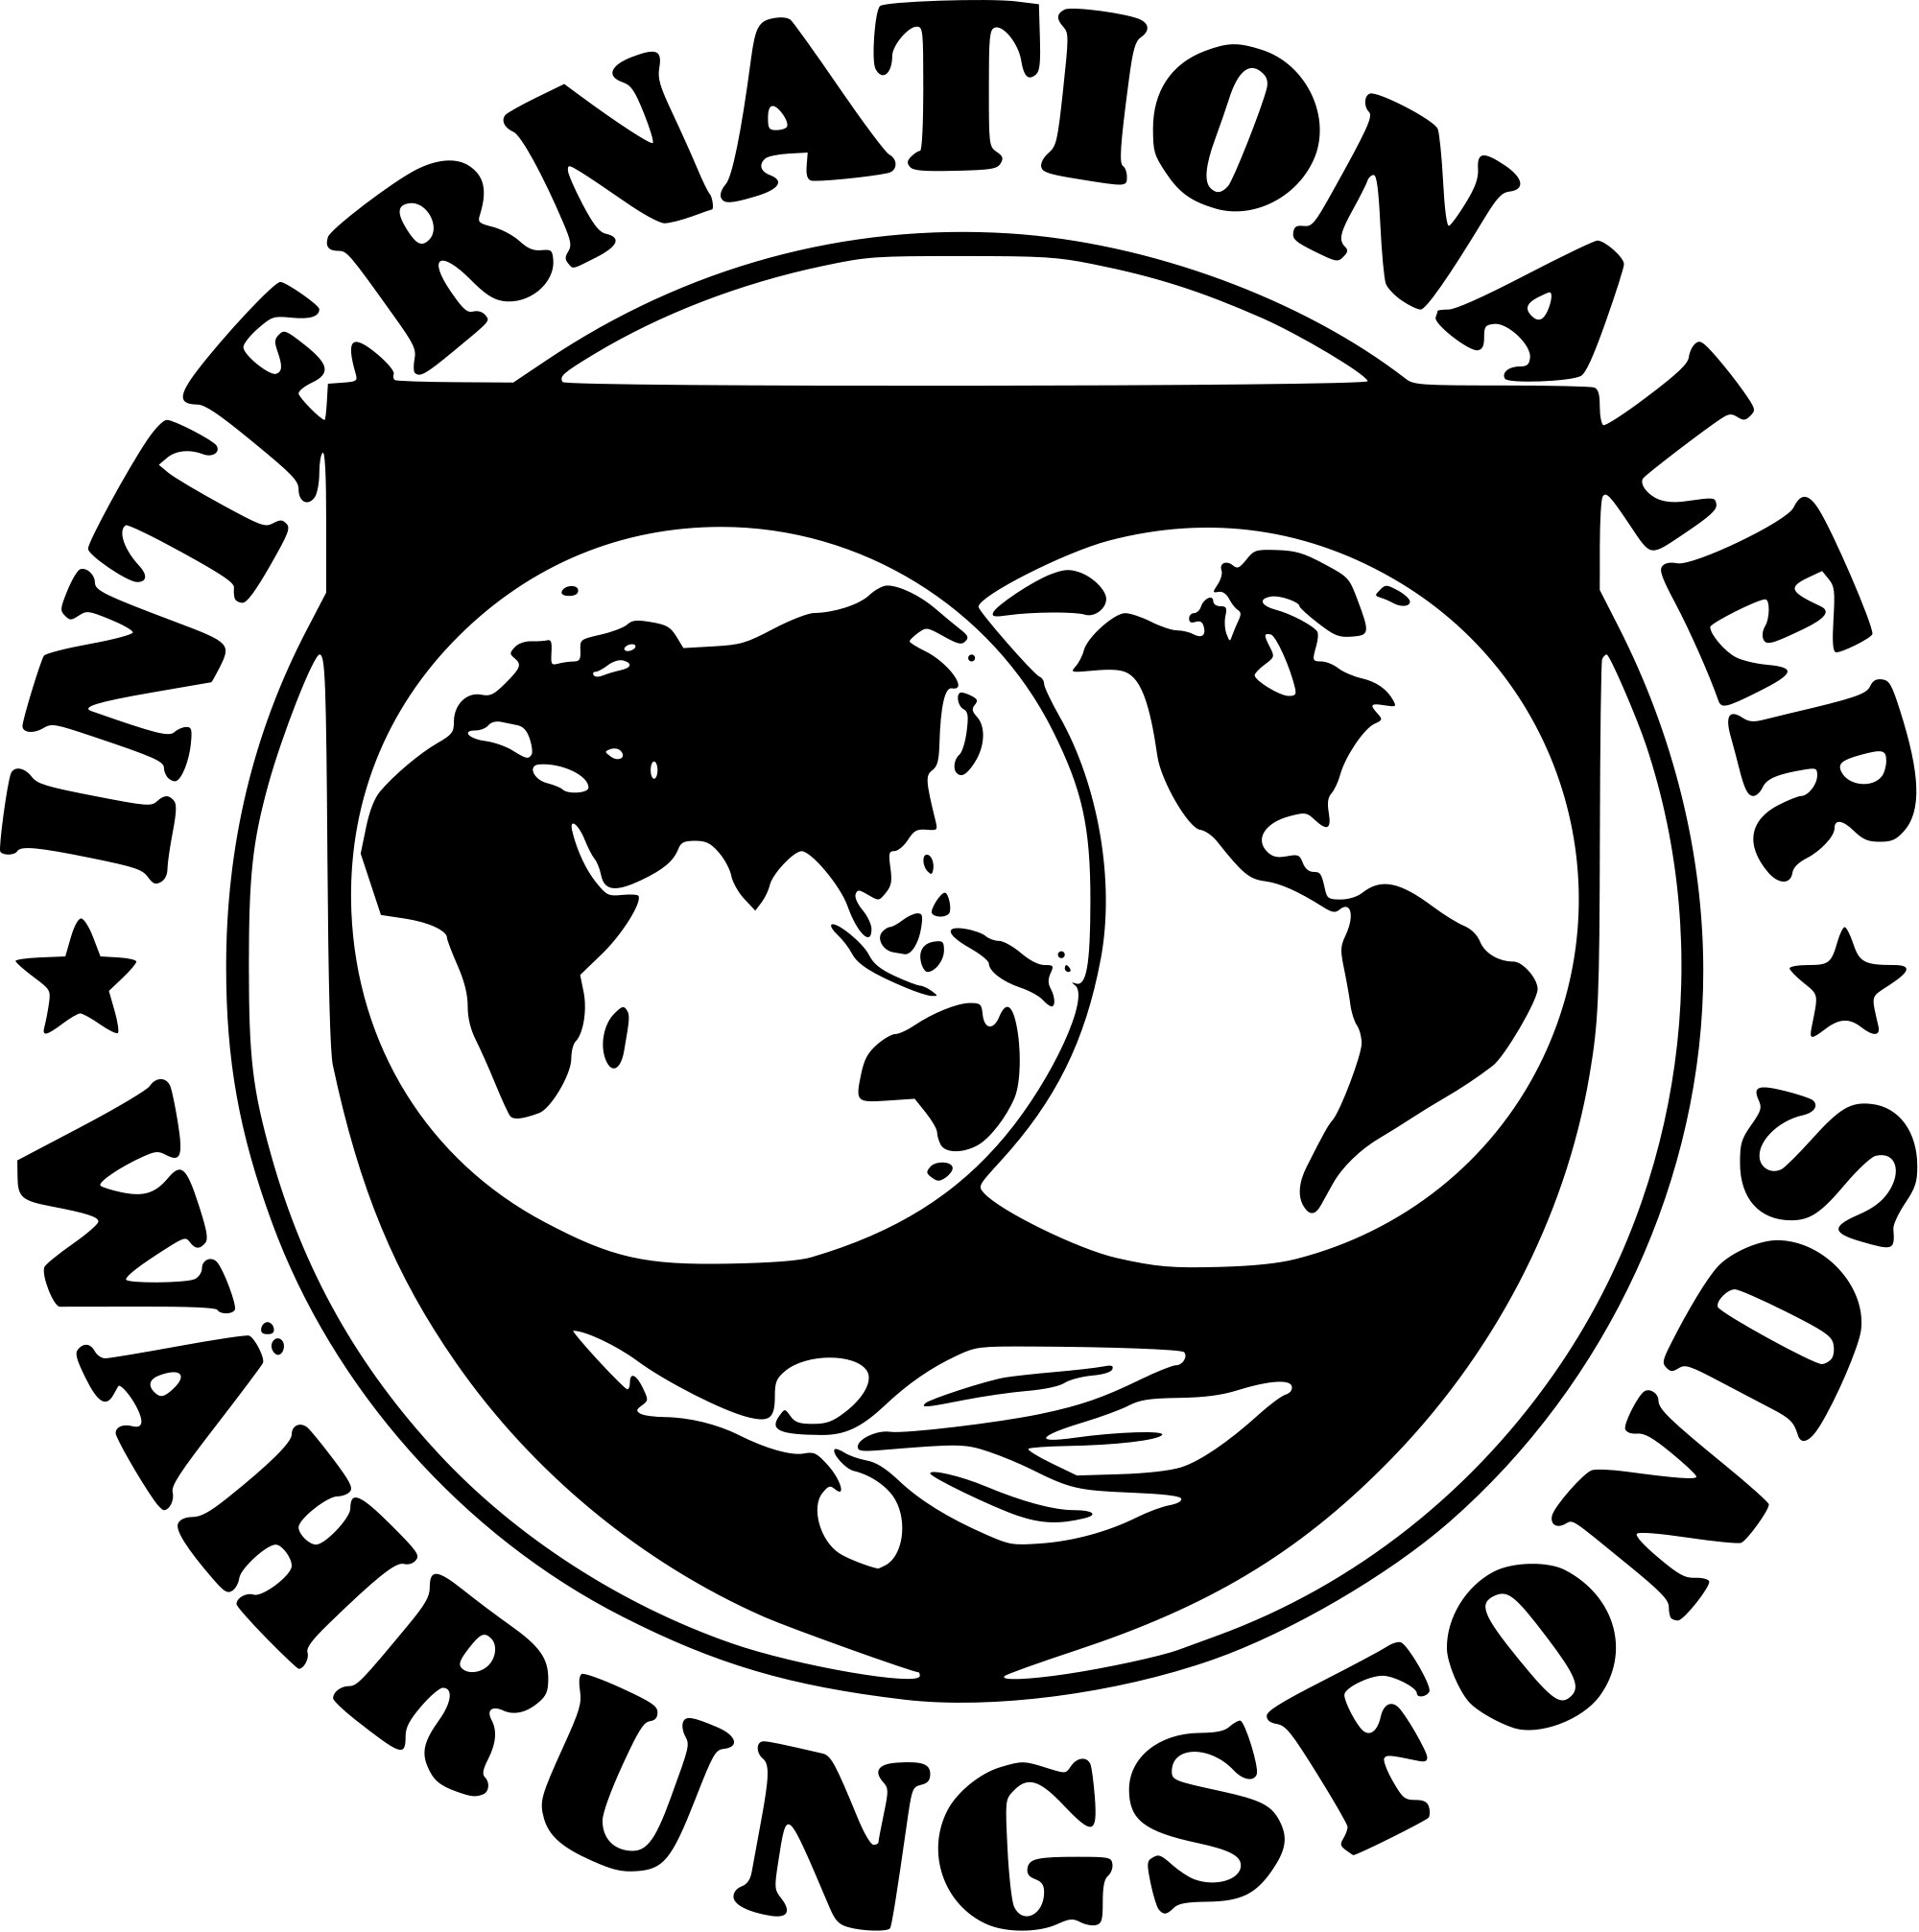 Всемирный валютный банк. МВФ эмблема. Международный валютный фонд (МВФ). Международный валютный фонд флаг. Герб МВФ.